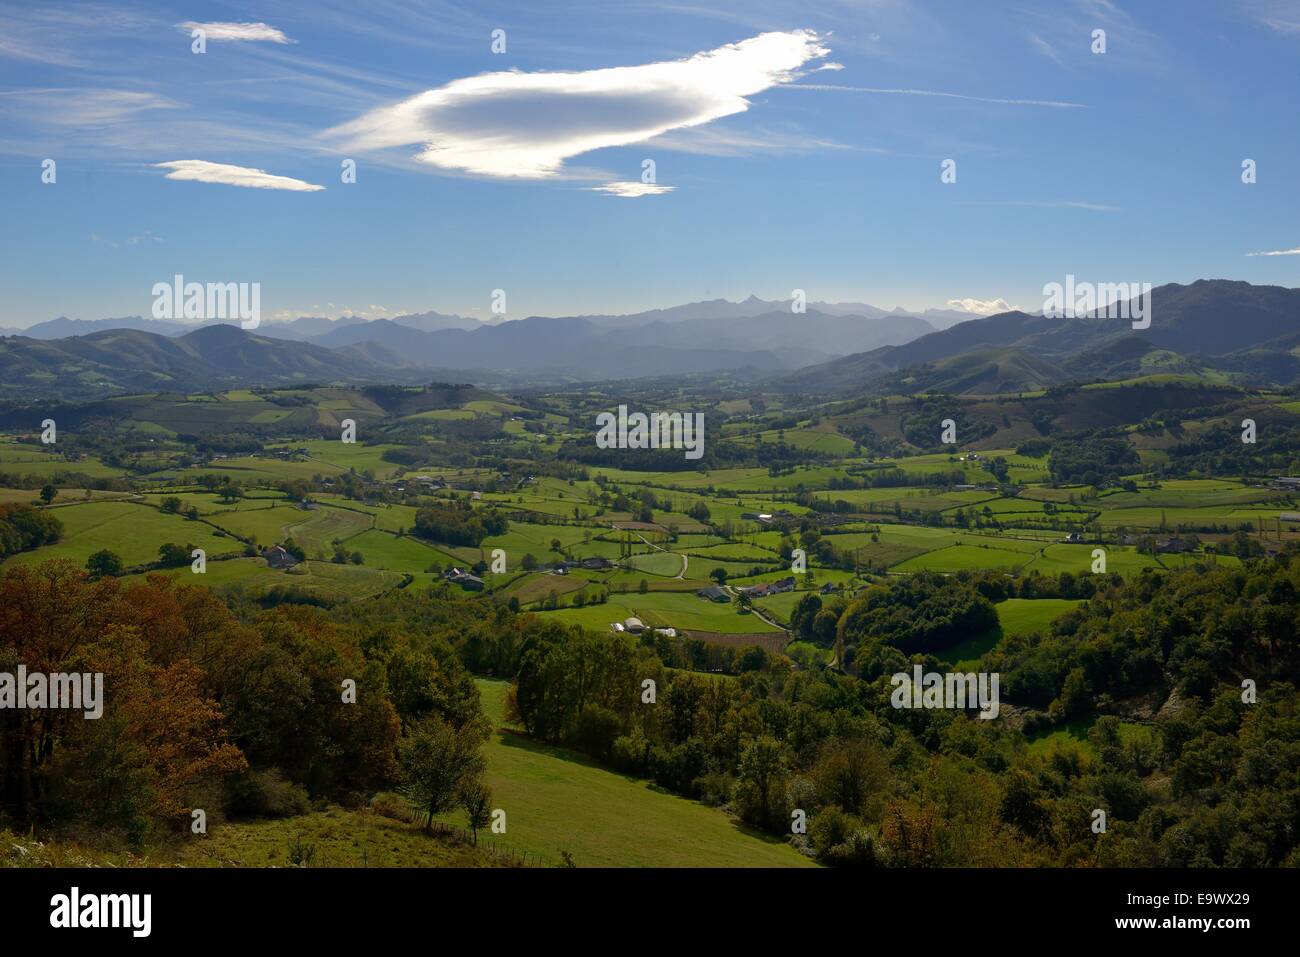 Francia, dei Pirenei atlantici, il verde paesaggio della regione Soule, le montagne dei Pirenei in background Foto Stock